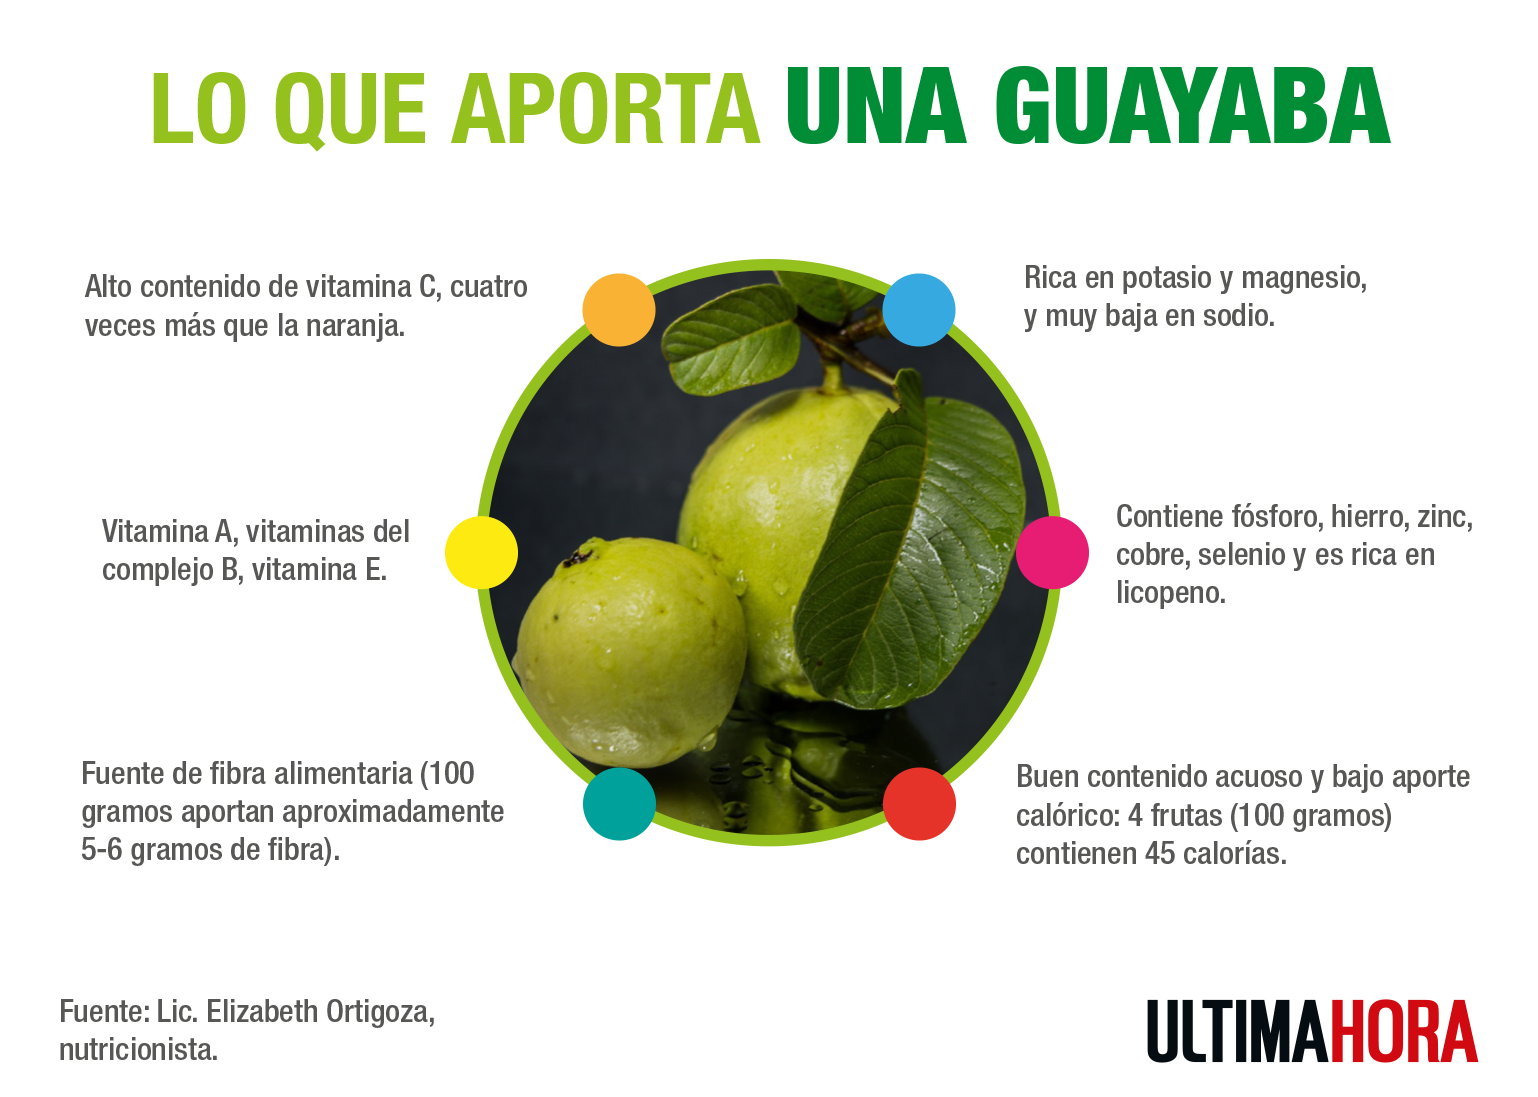 La guayaba, un compendio de vitaminas